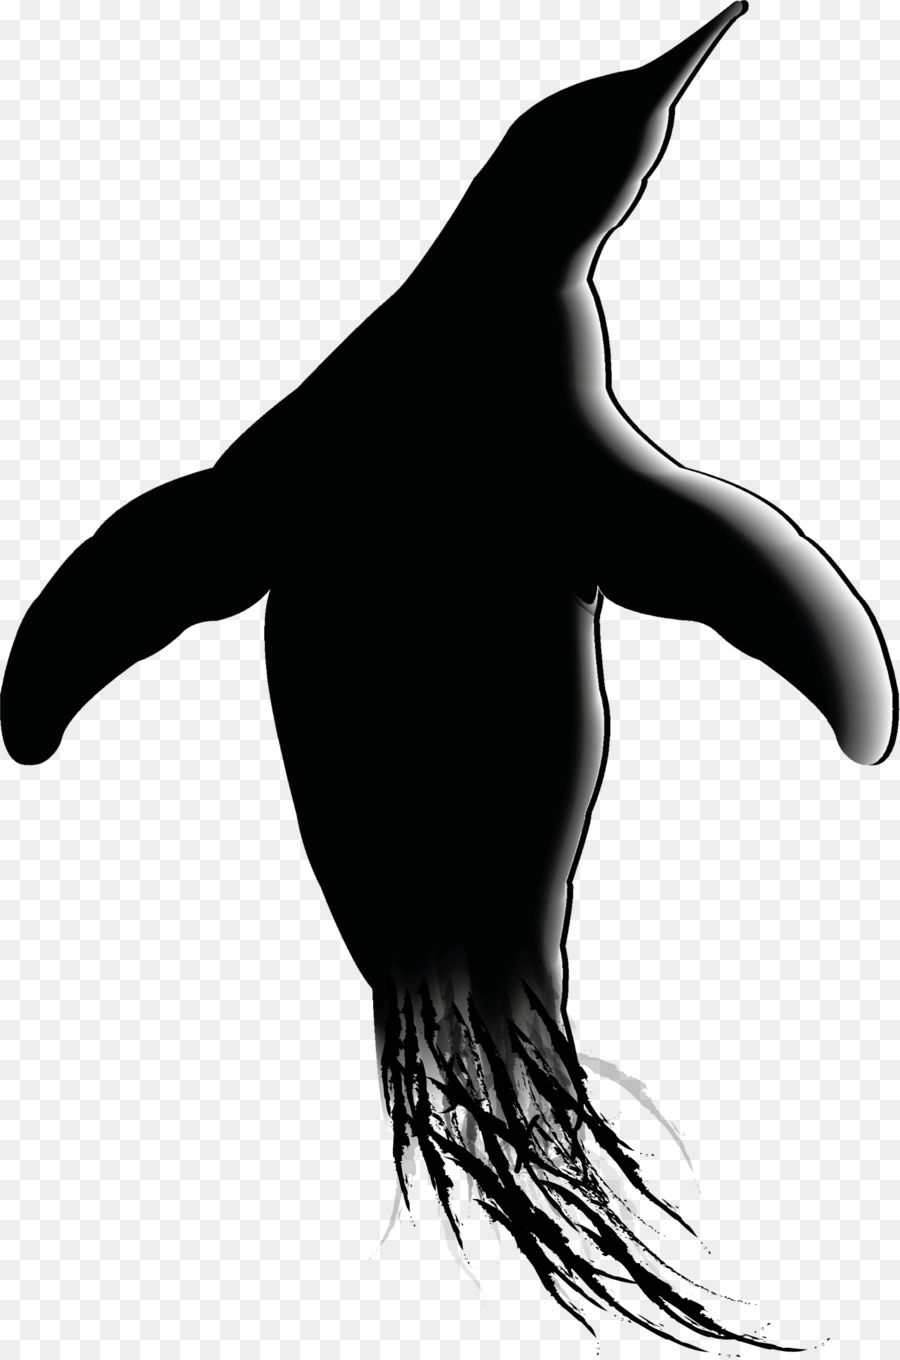 Pinguino Sea lion Silhouette Clip art - Pinguino